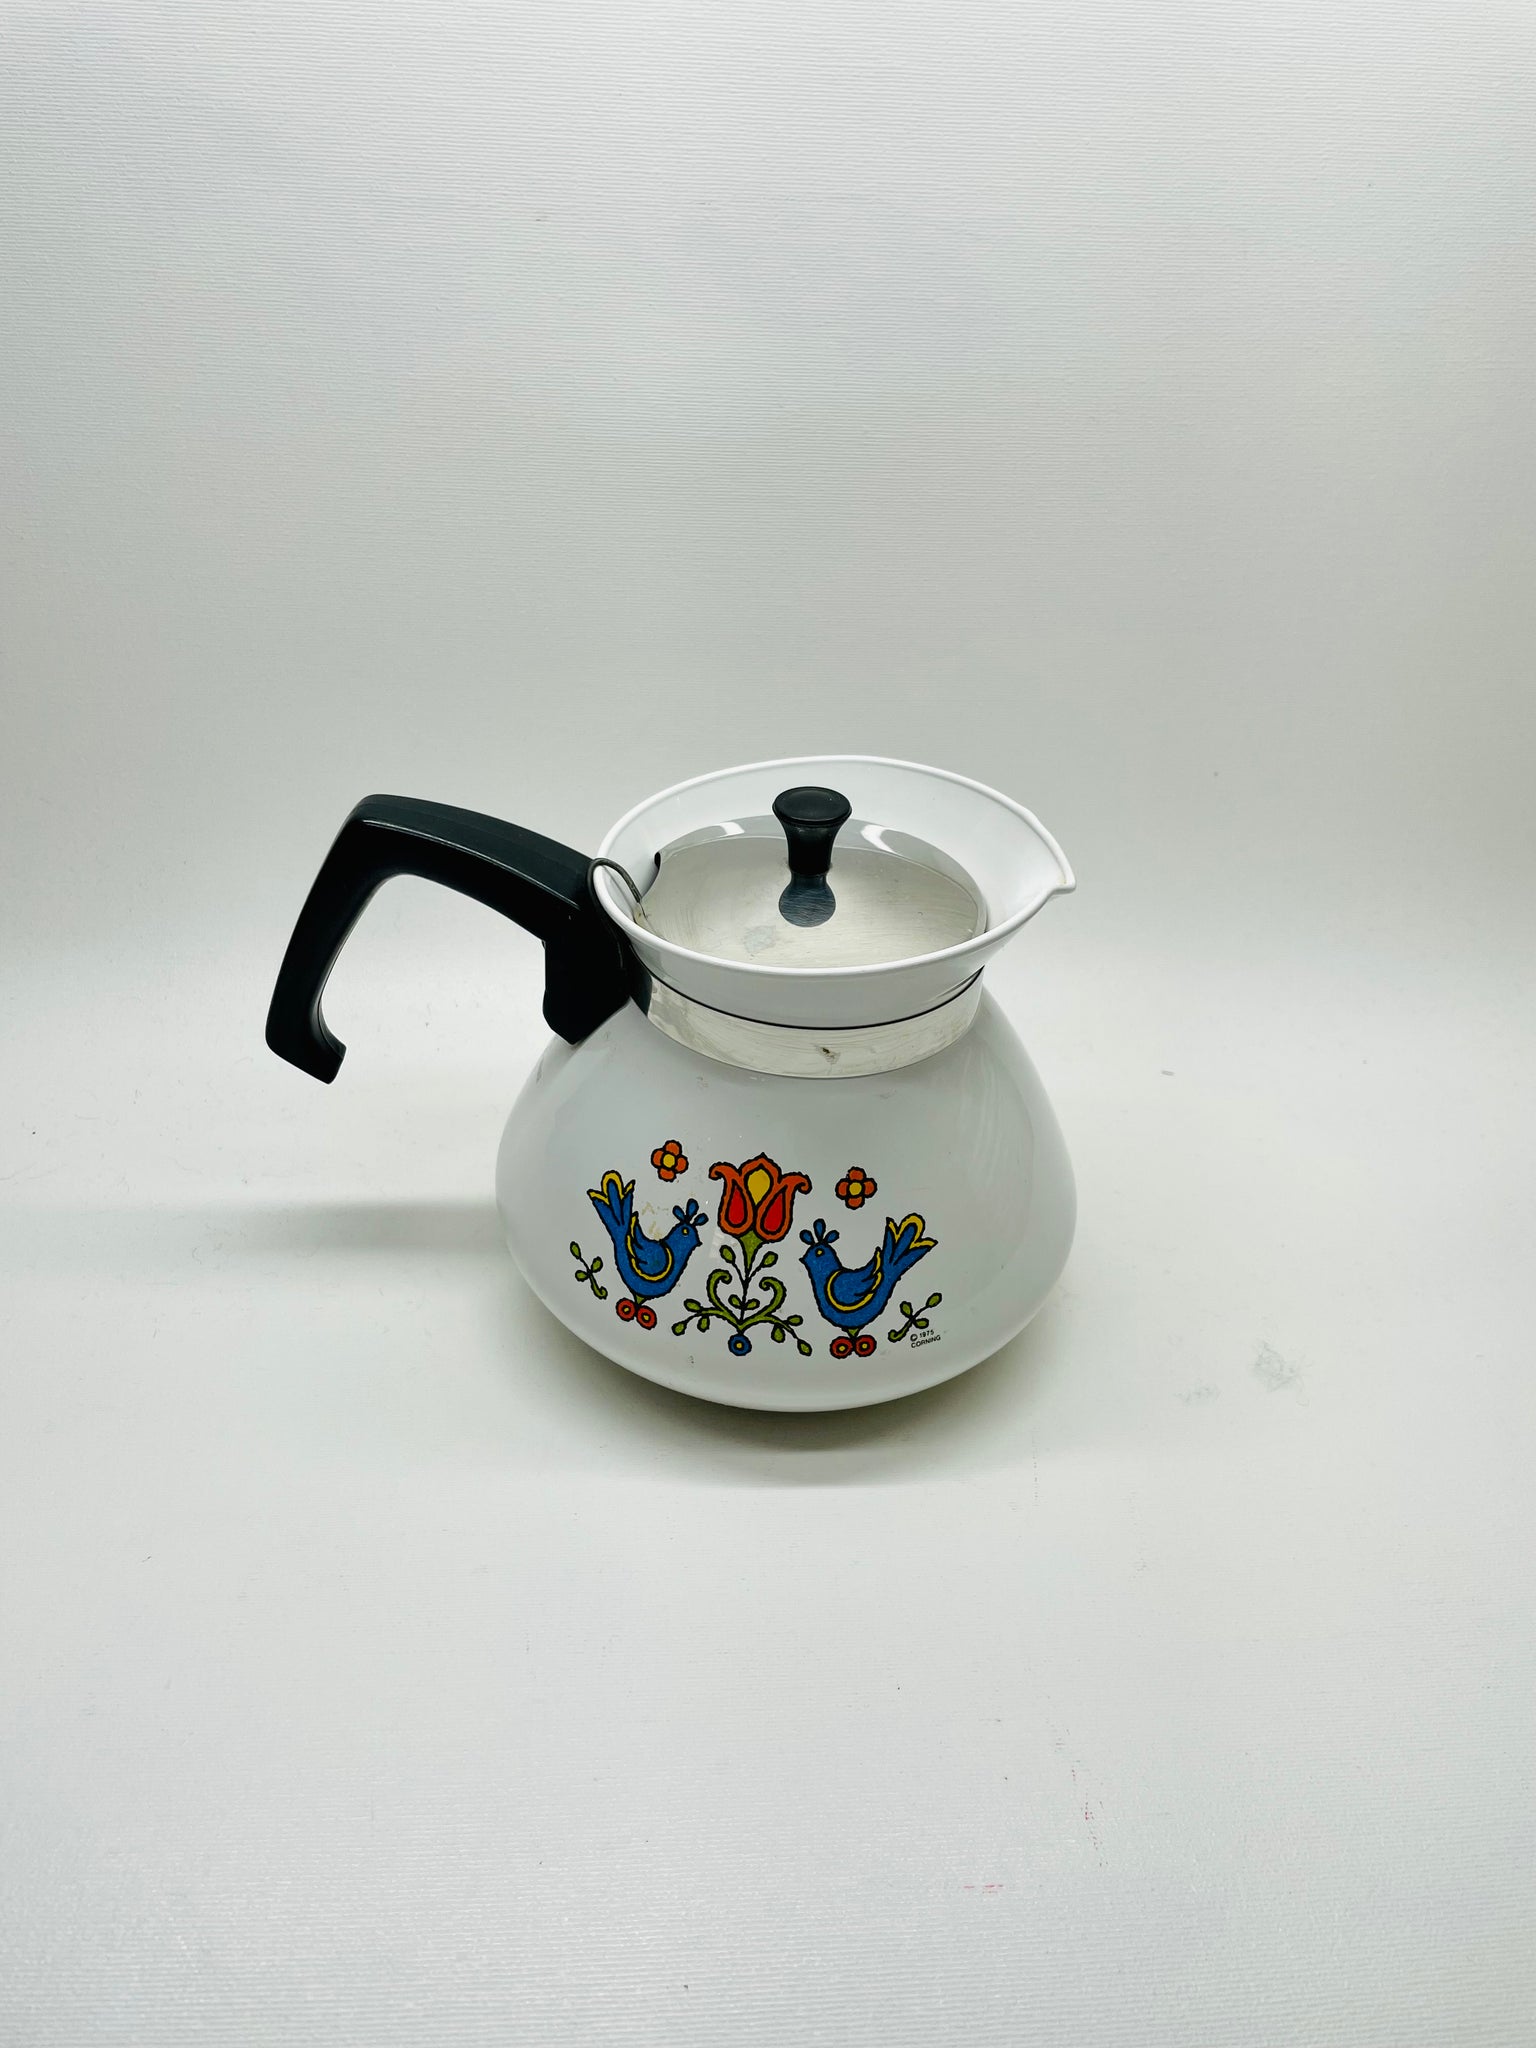 Vintage Corning Ware Teapot